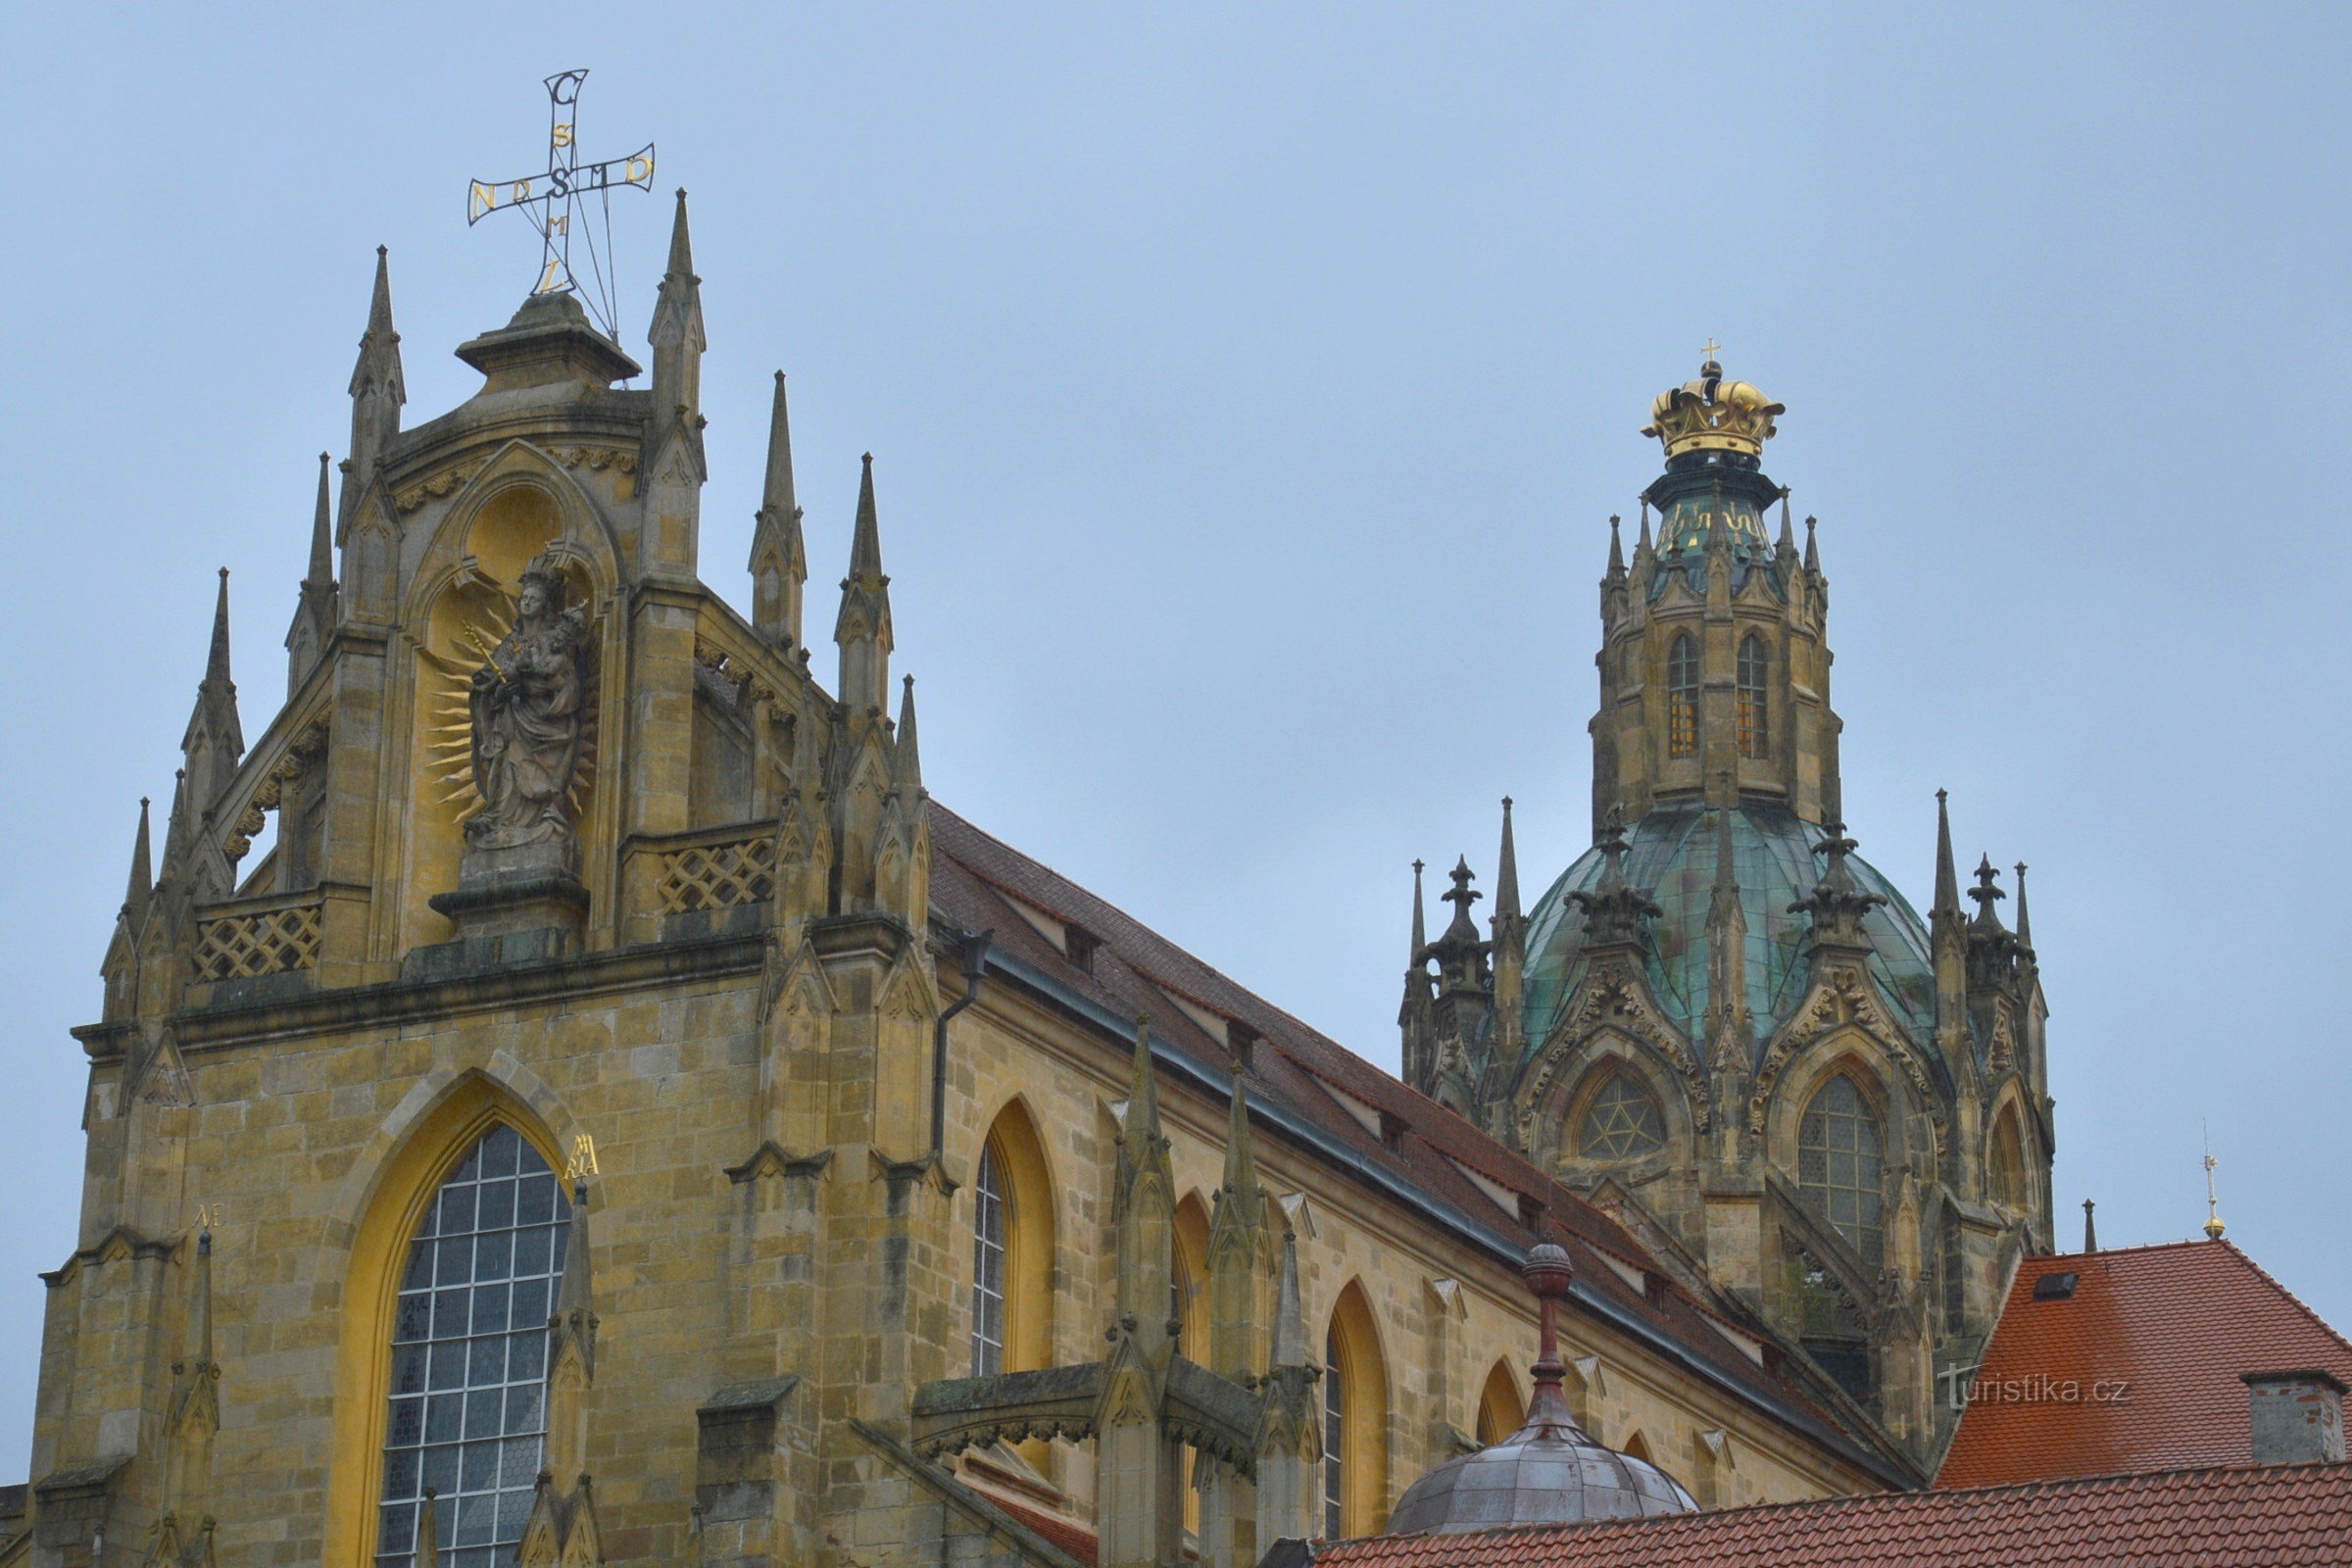 samostanska crkva s marijanskom krunom